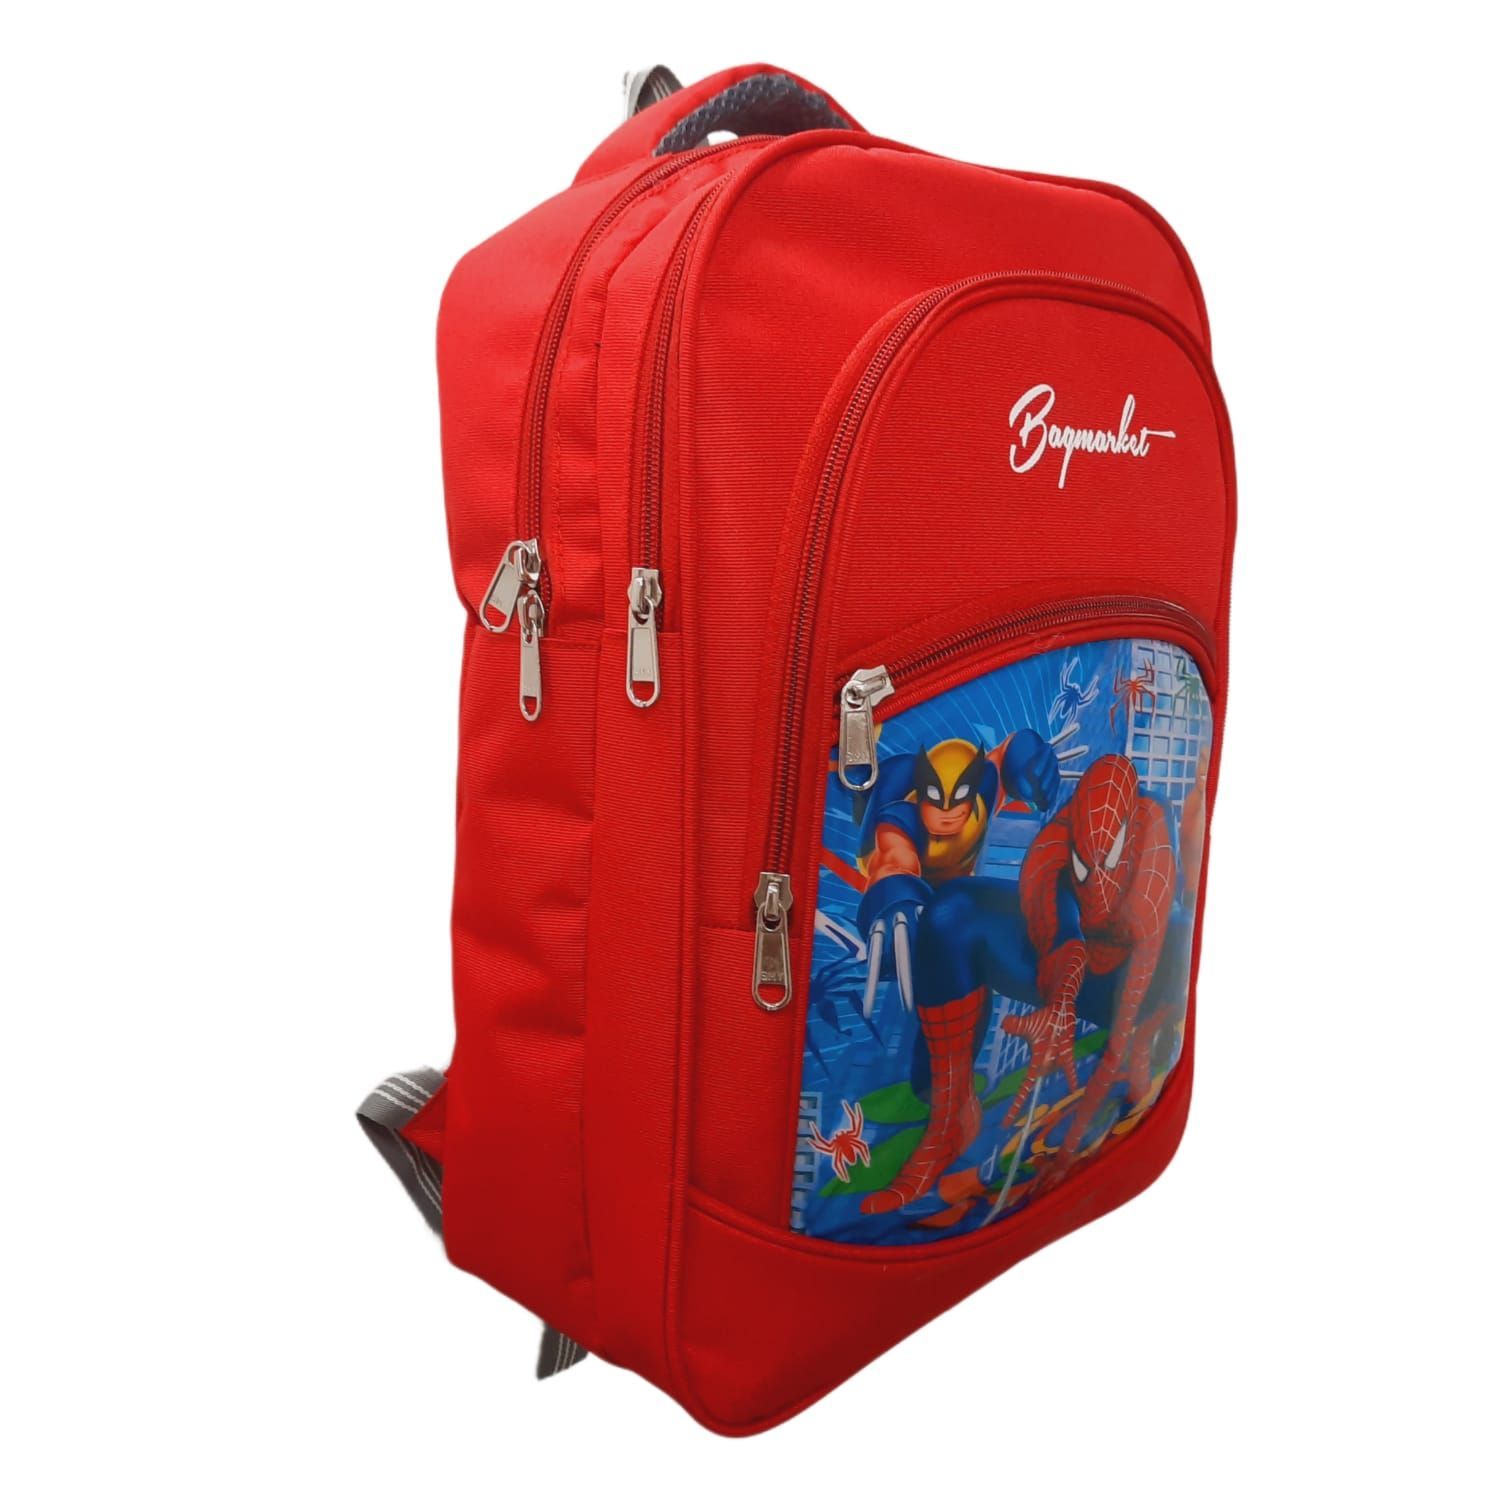 Premium children school bag – Giftoo.in